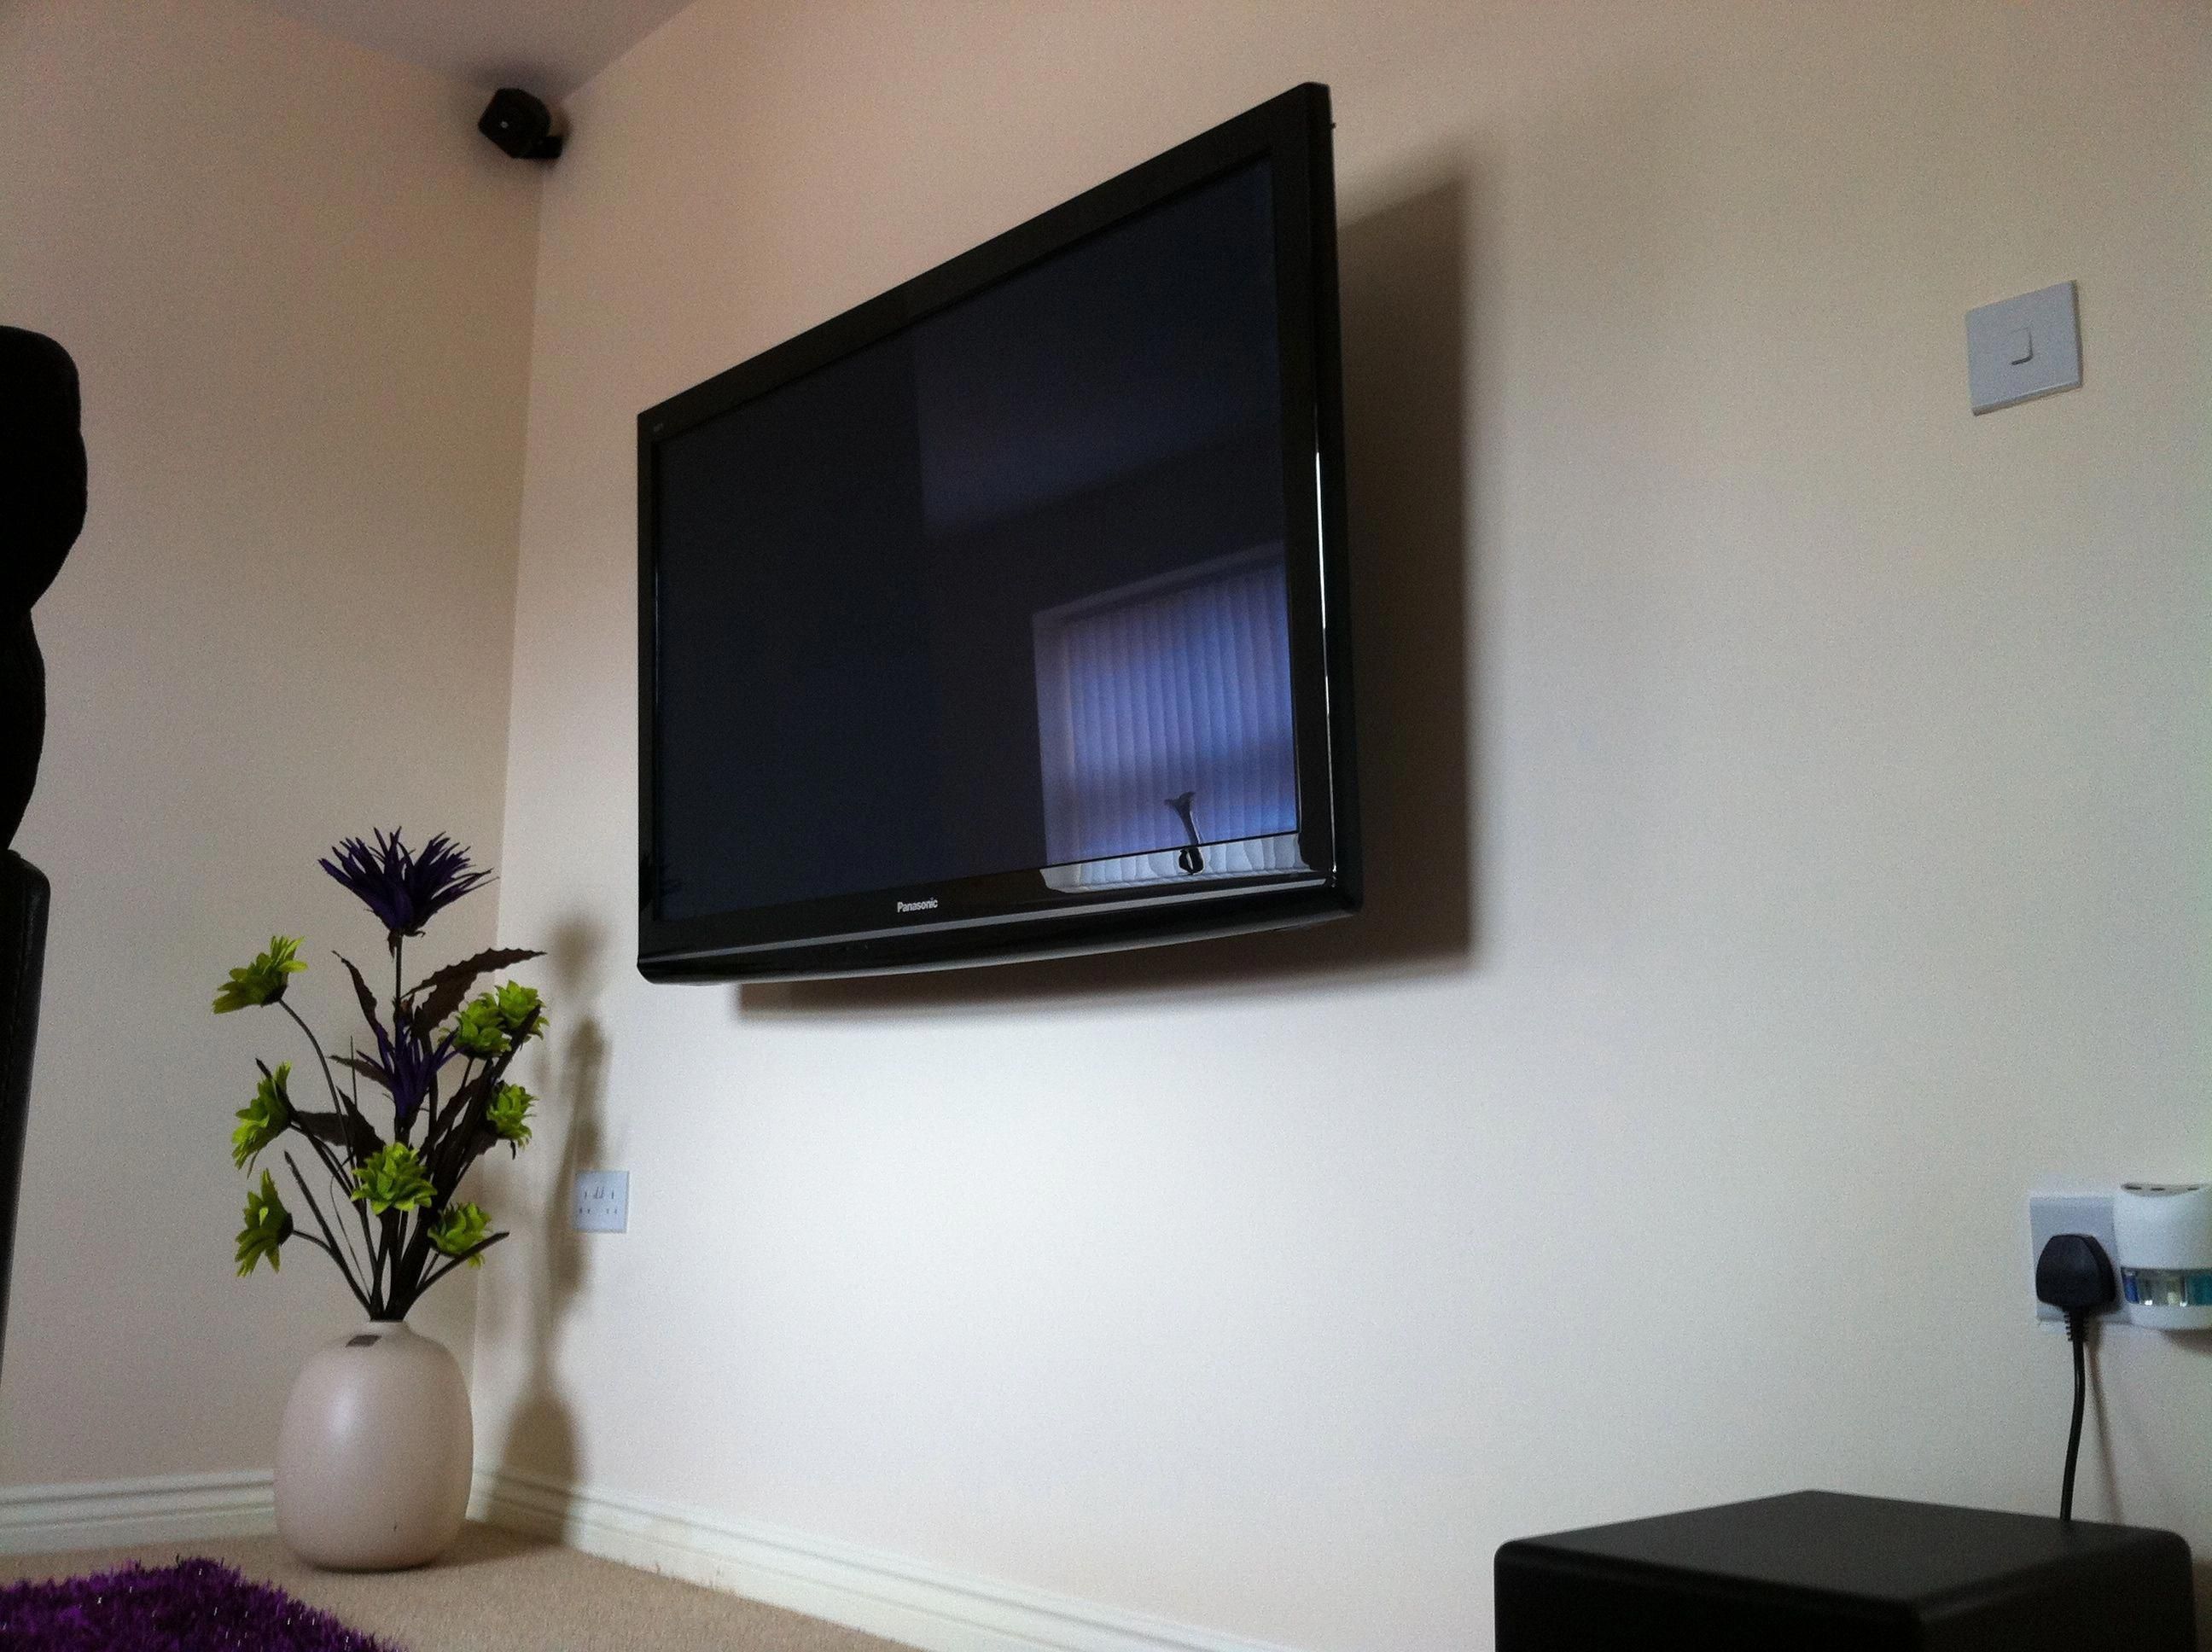 Повесить тв на стену. Телевизор на стене. Плоский телевизор на стену. Стол для телевизора. Плазма на стене.